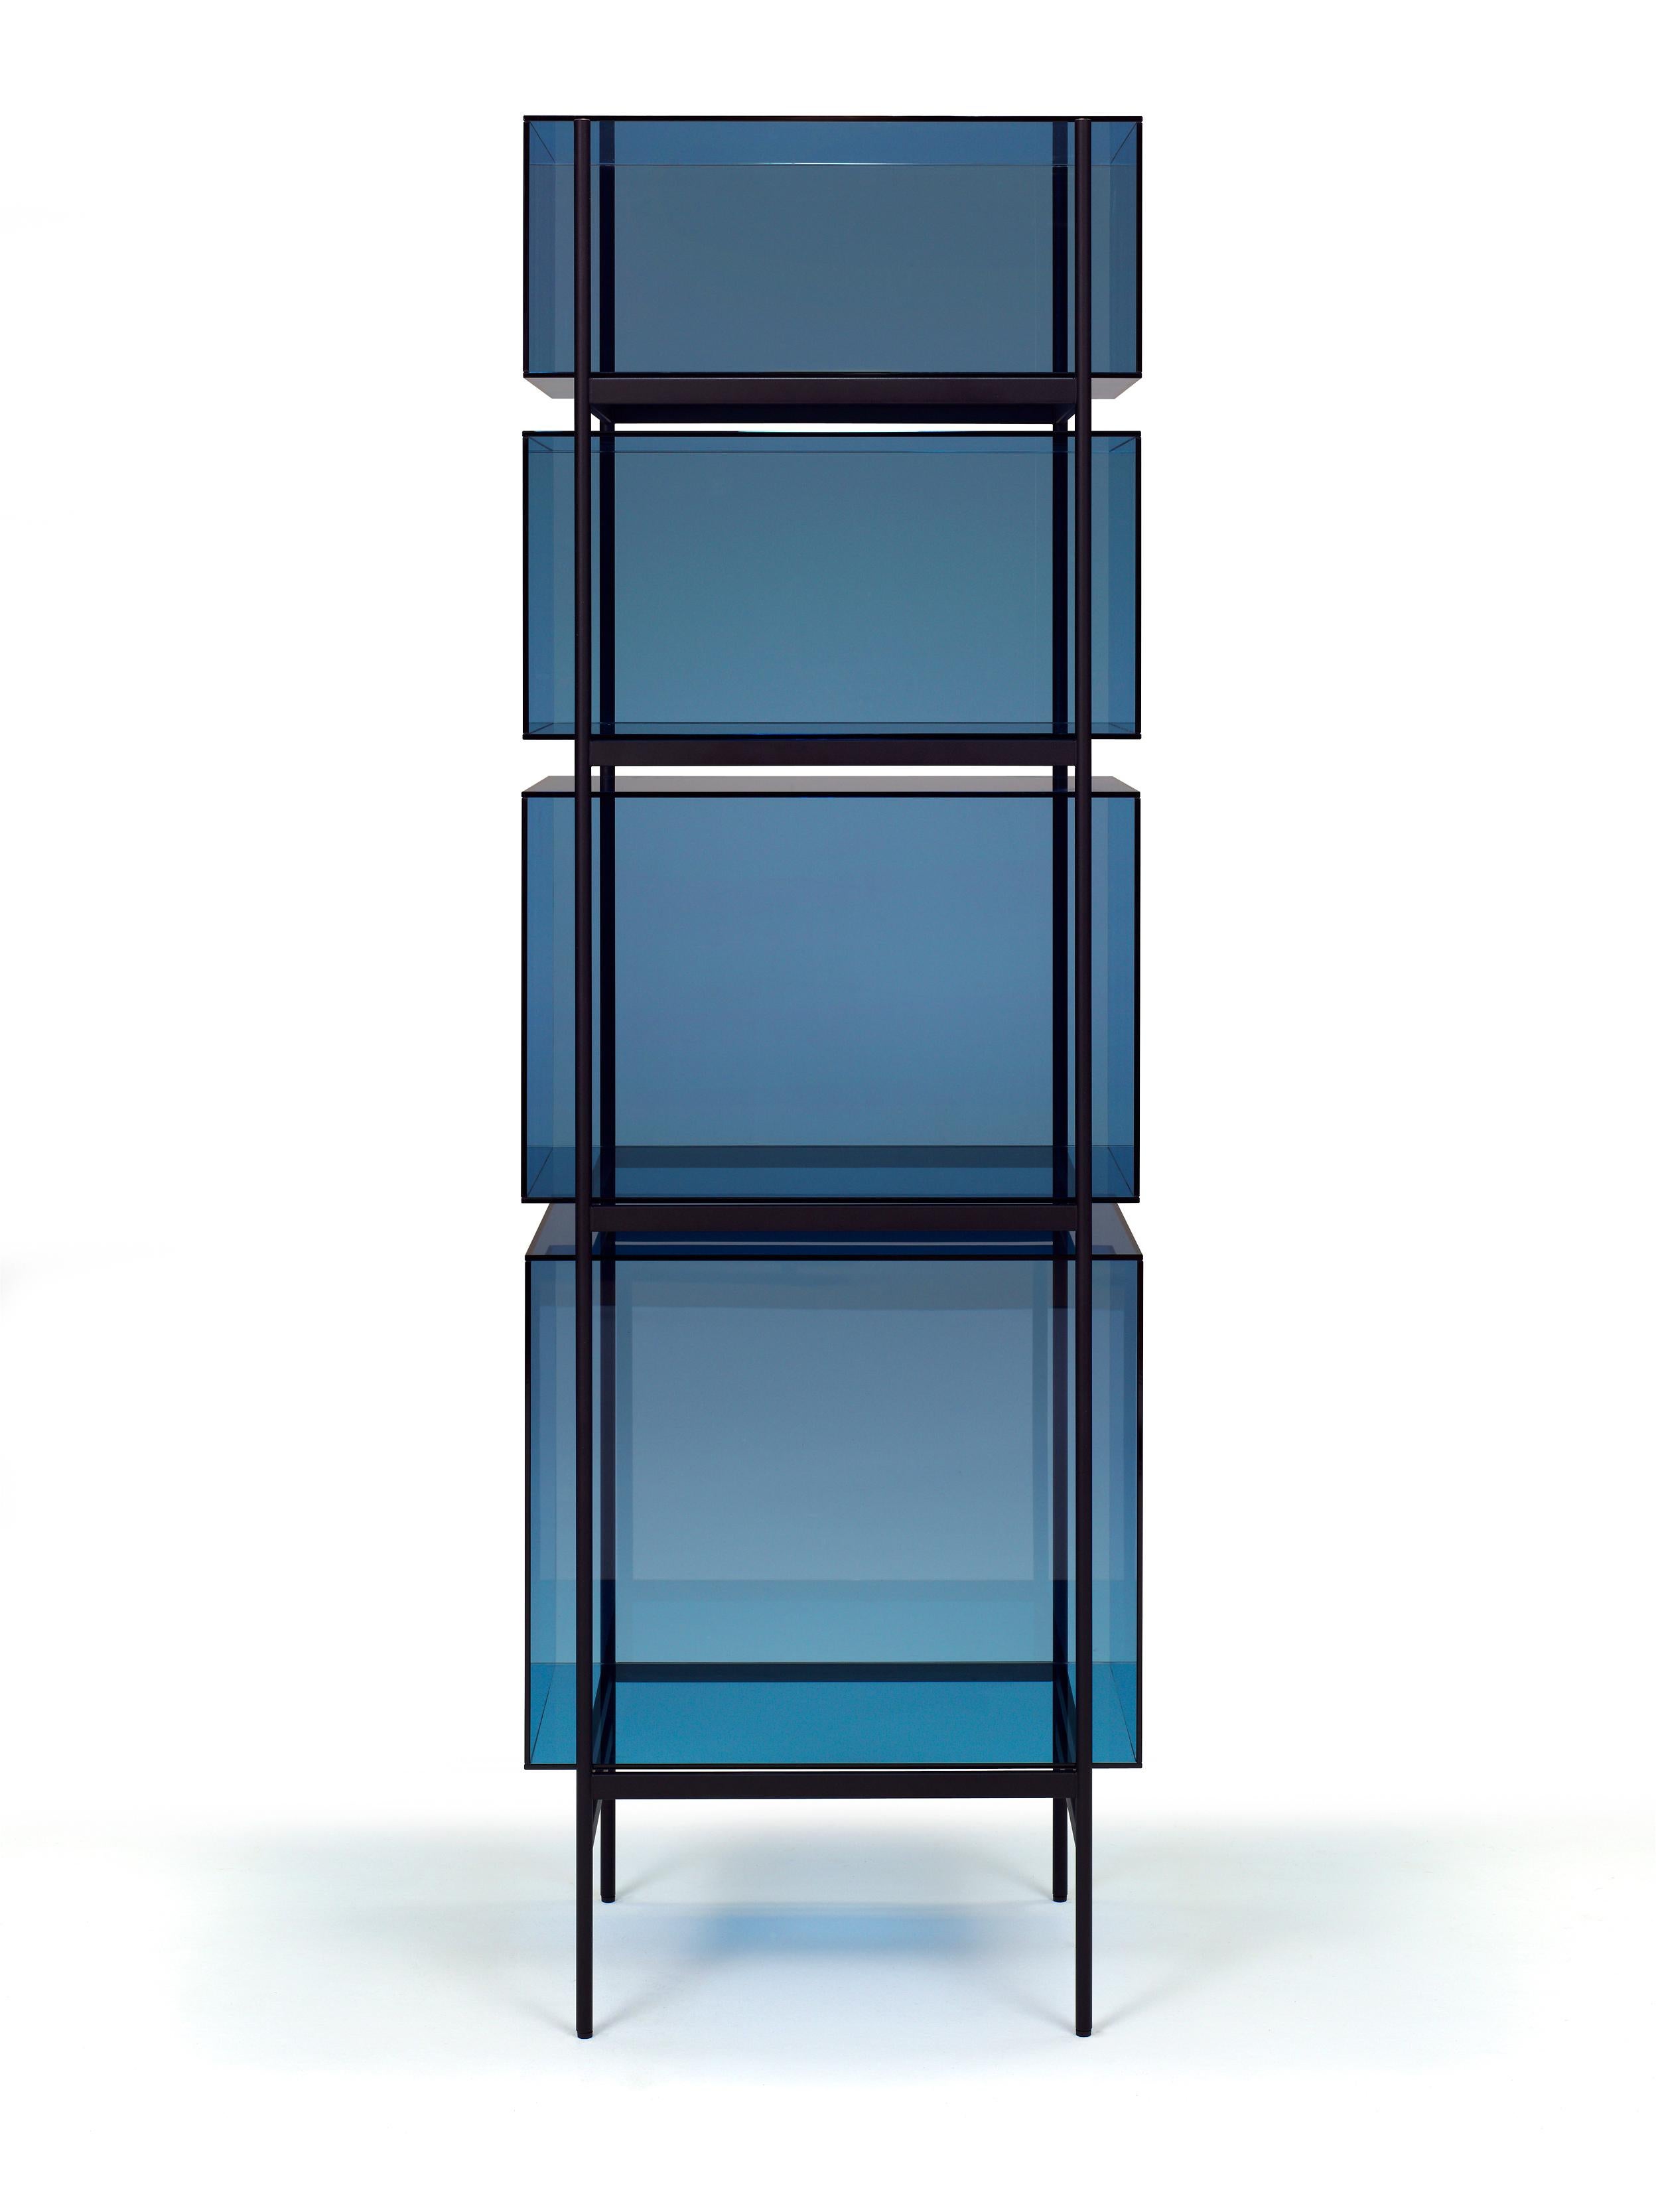 Lyn hoher blauer schwarzer schrank by Pulpo
Abmessungen: T60 x B45 x H185 cm
MATERIALIEN: Glas; pulverbeschichteter Stahl.

Auch in verschiedenen Farben erhältlich. 

Das Studio Visser & Meijwaard beschreibt sein Konzept von lyn als